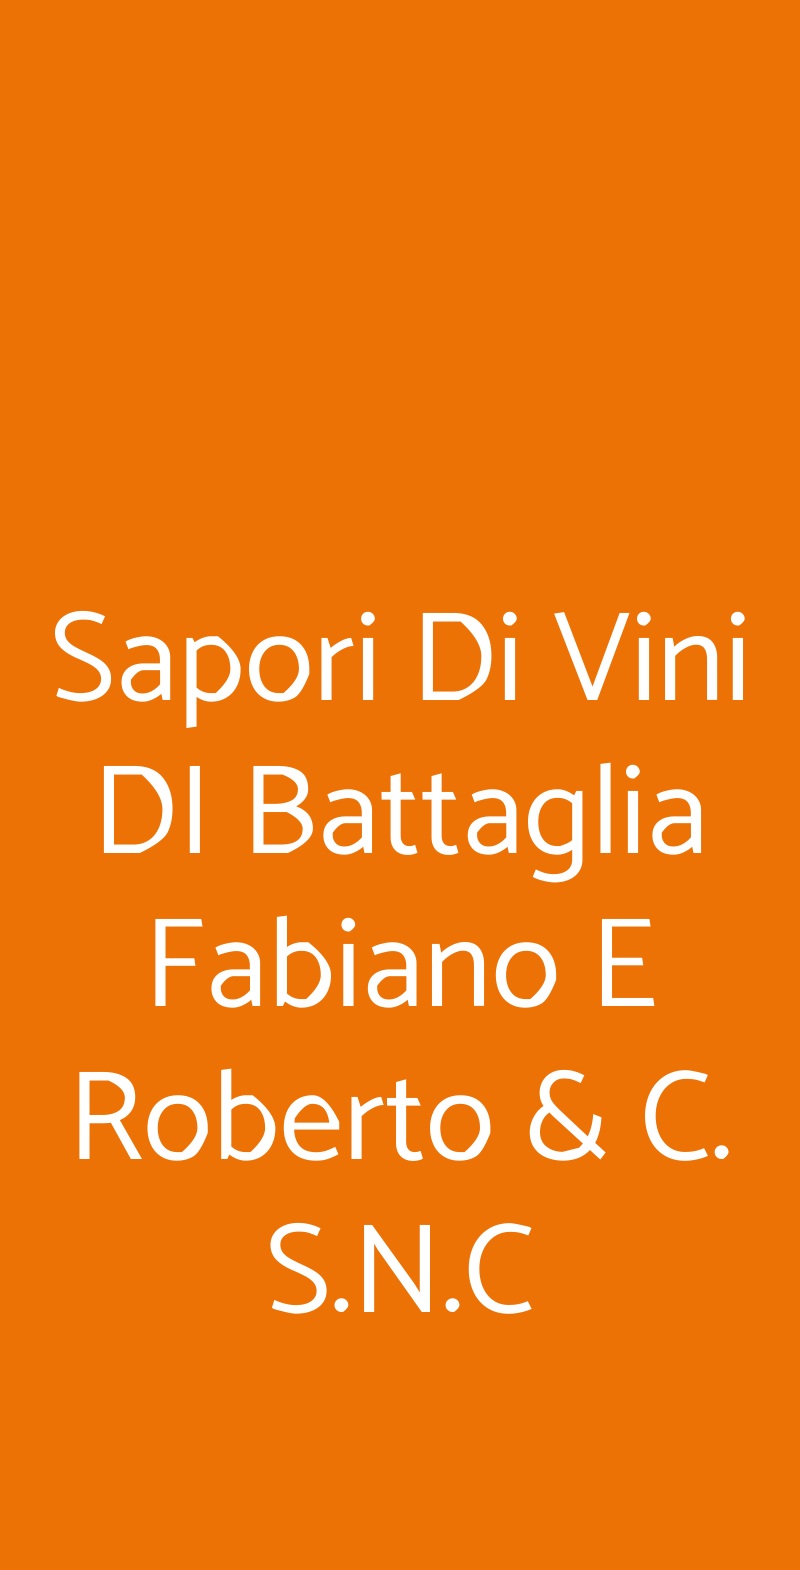 Sapori Di Vini DI Battaglia Fabiano E Roberto & C. S.N.C Orio Al Serio menù 1 pagina